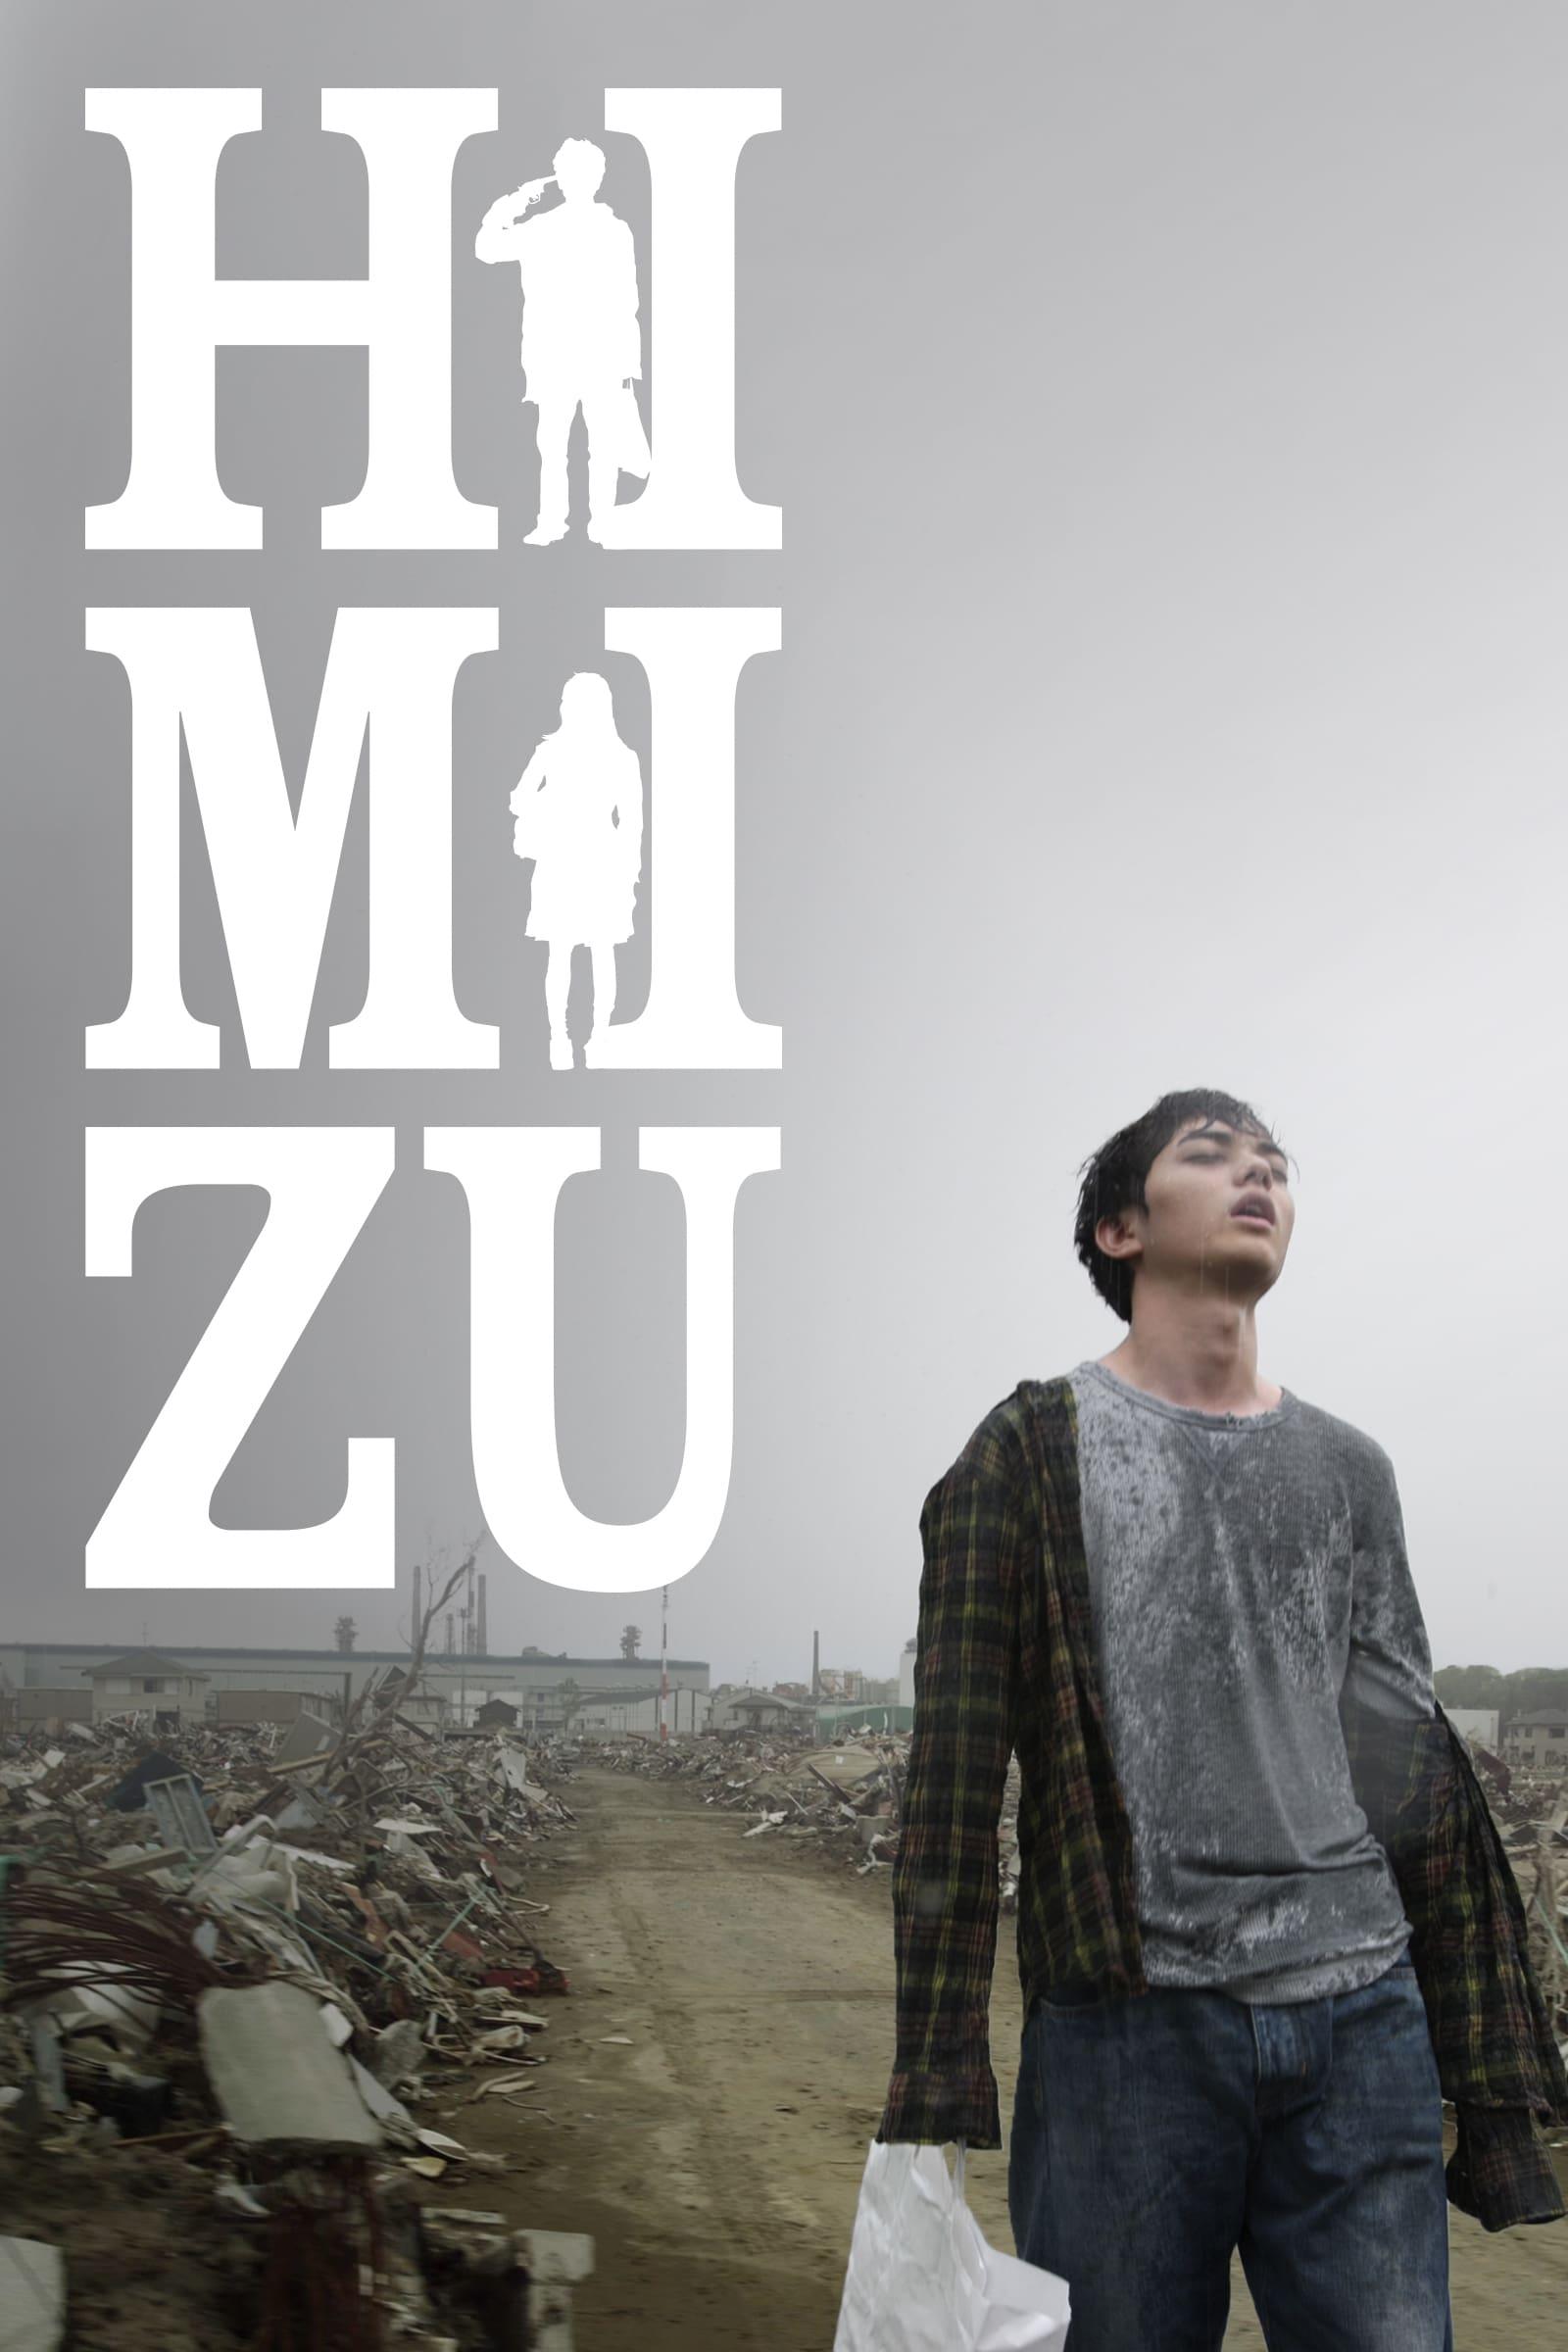 Himizu poster